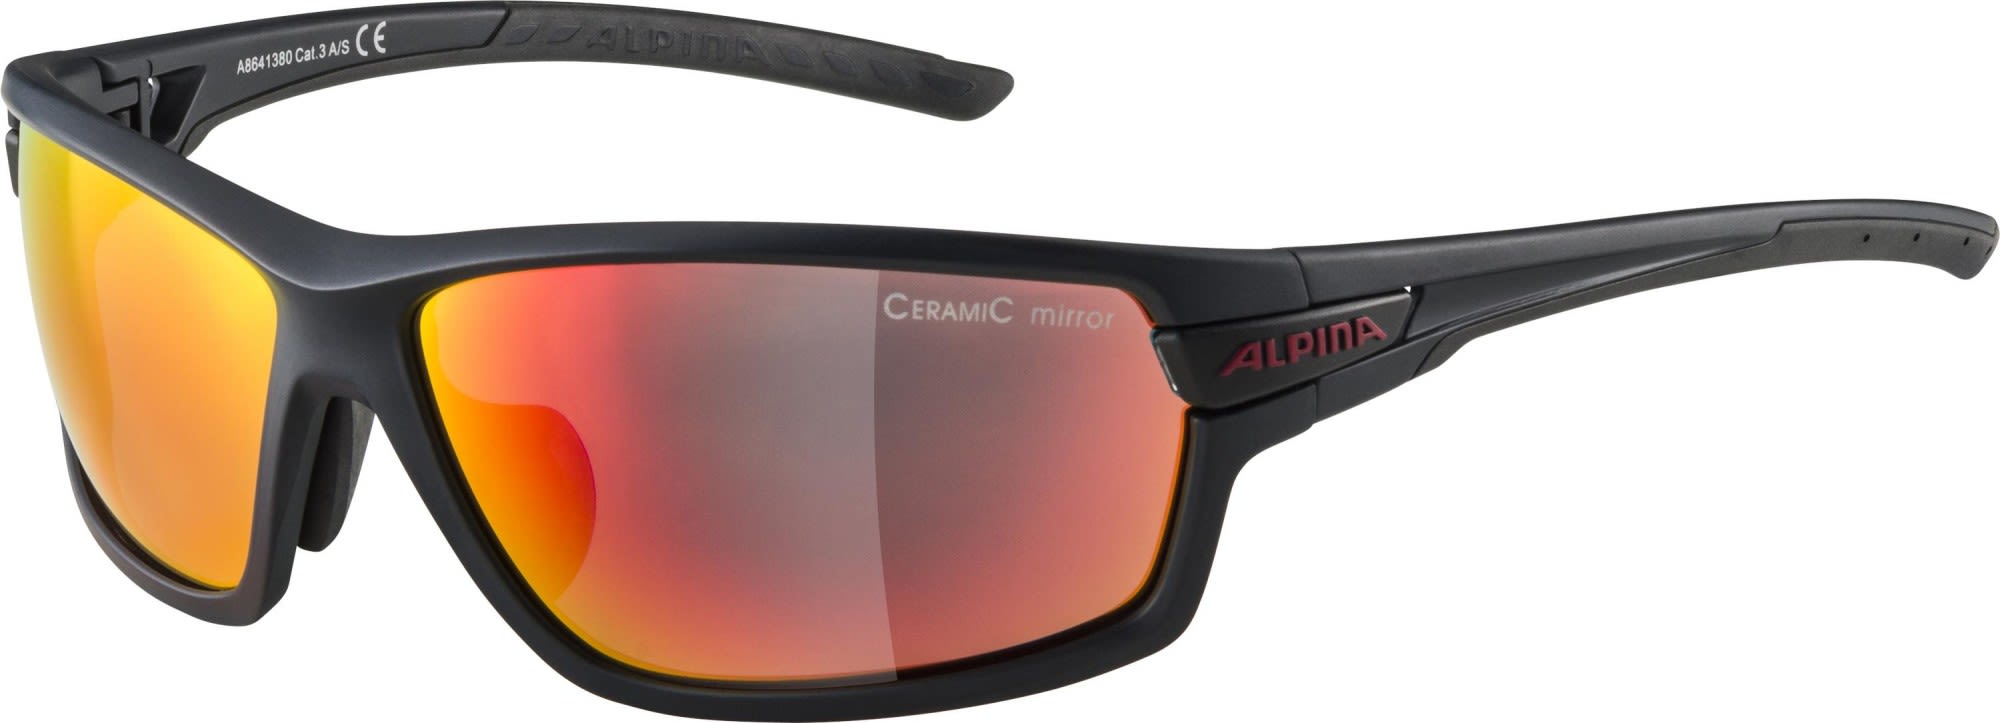 Alpina Komfortable Performance Sportbrille Indigo Matt - Cherry - Red Mirror - Clear - Orange Mirror